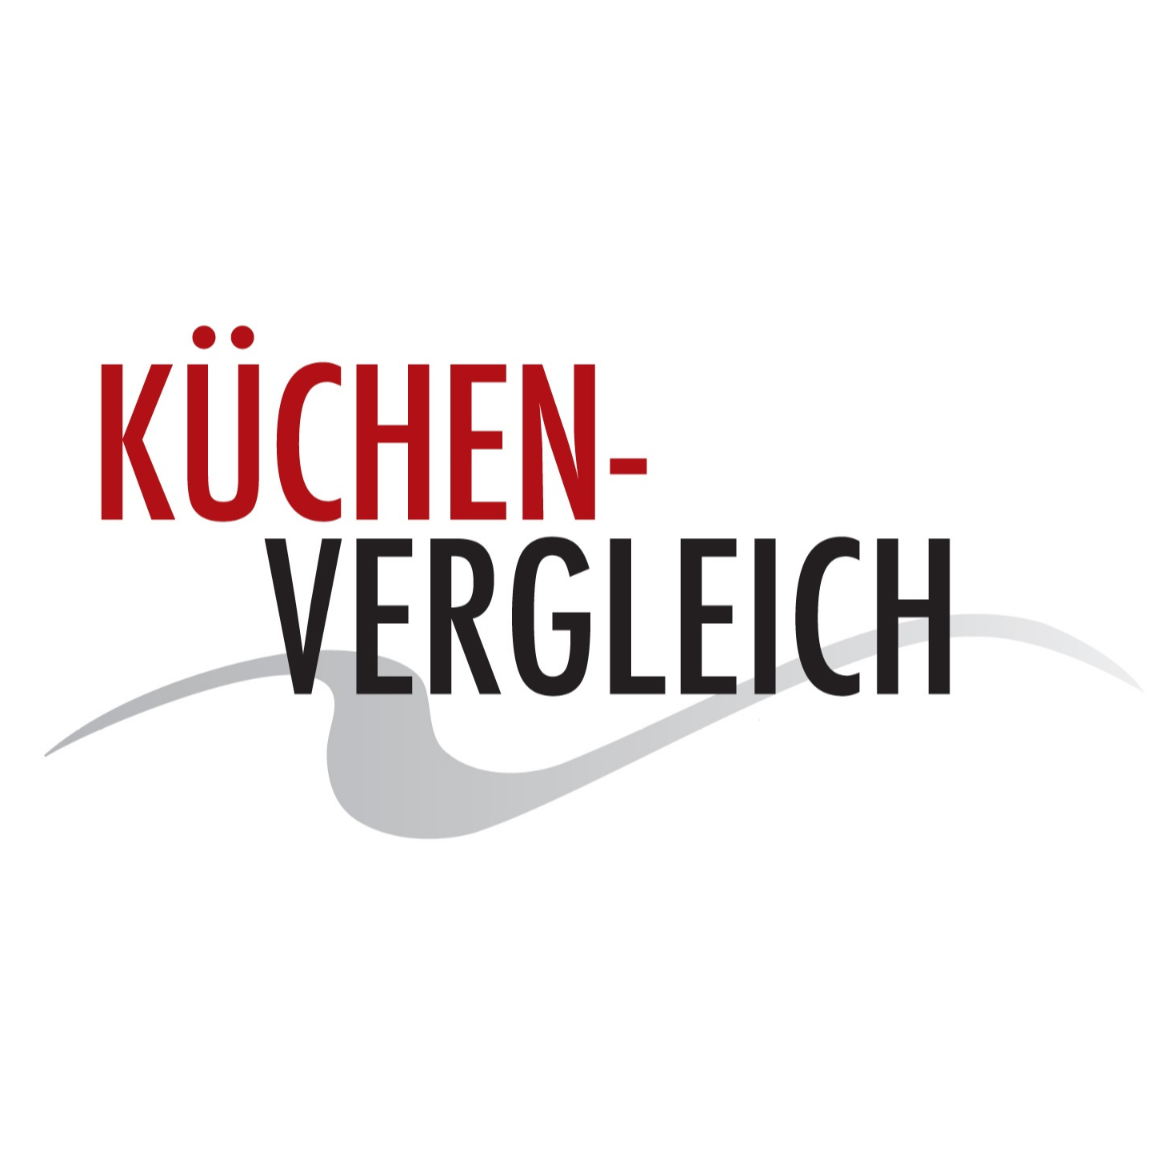 Küchenvergleich Jülich in Jülich - Logo